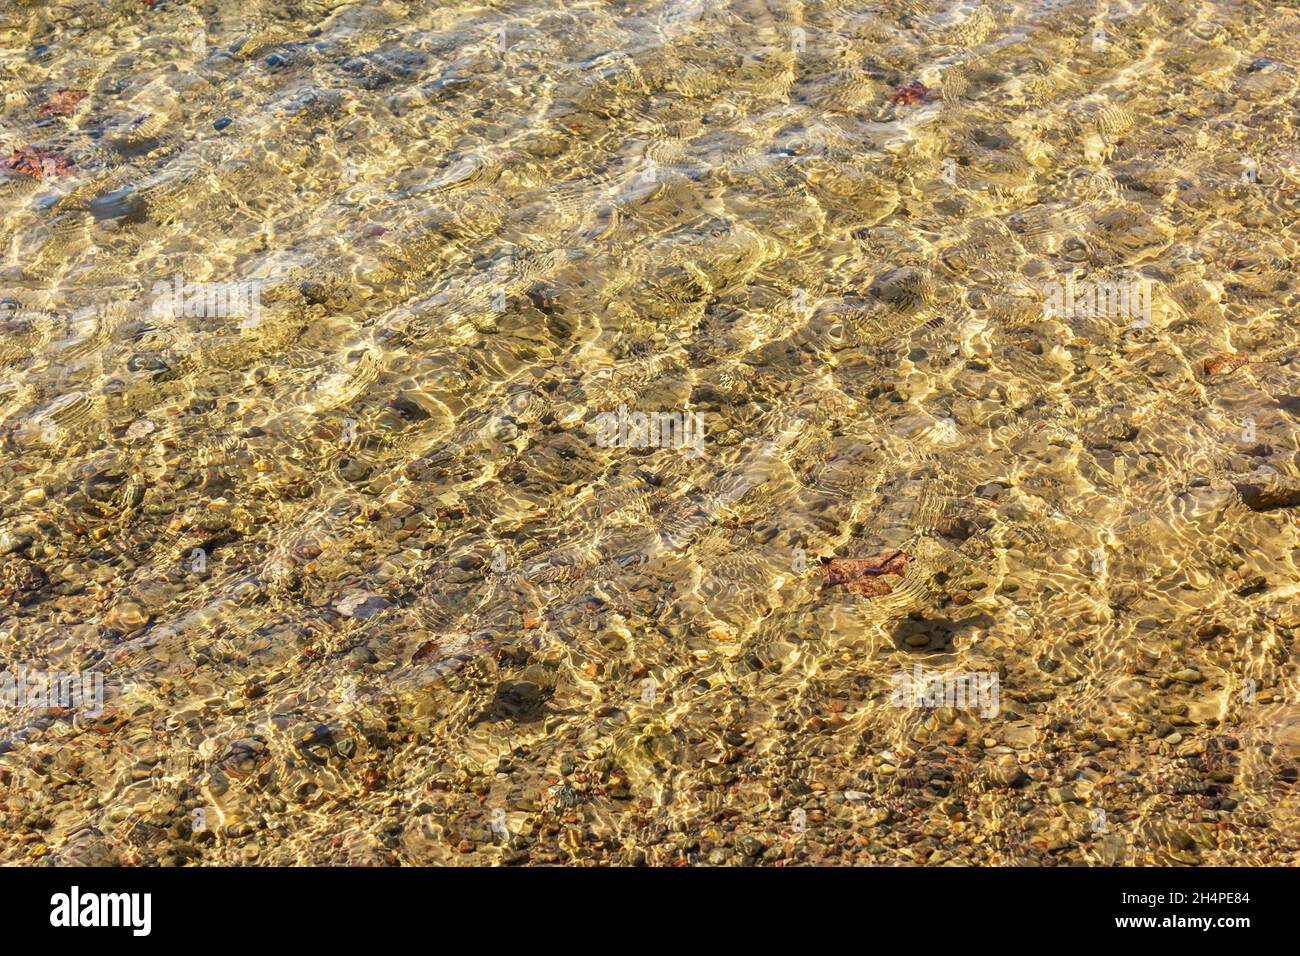 Mer transparente et eau dorée cristalline au début du printemps.Magnifique arrière-plan Banque D'Images